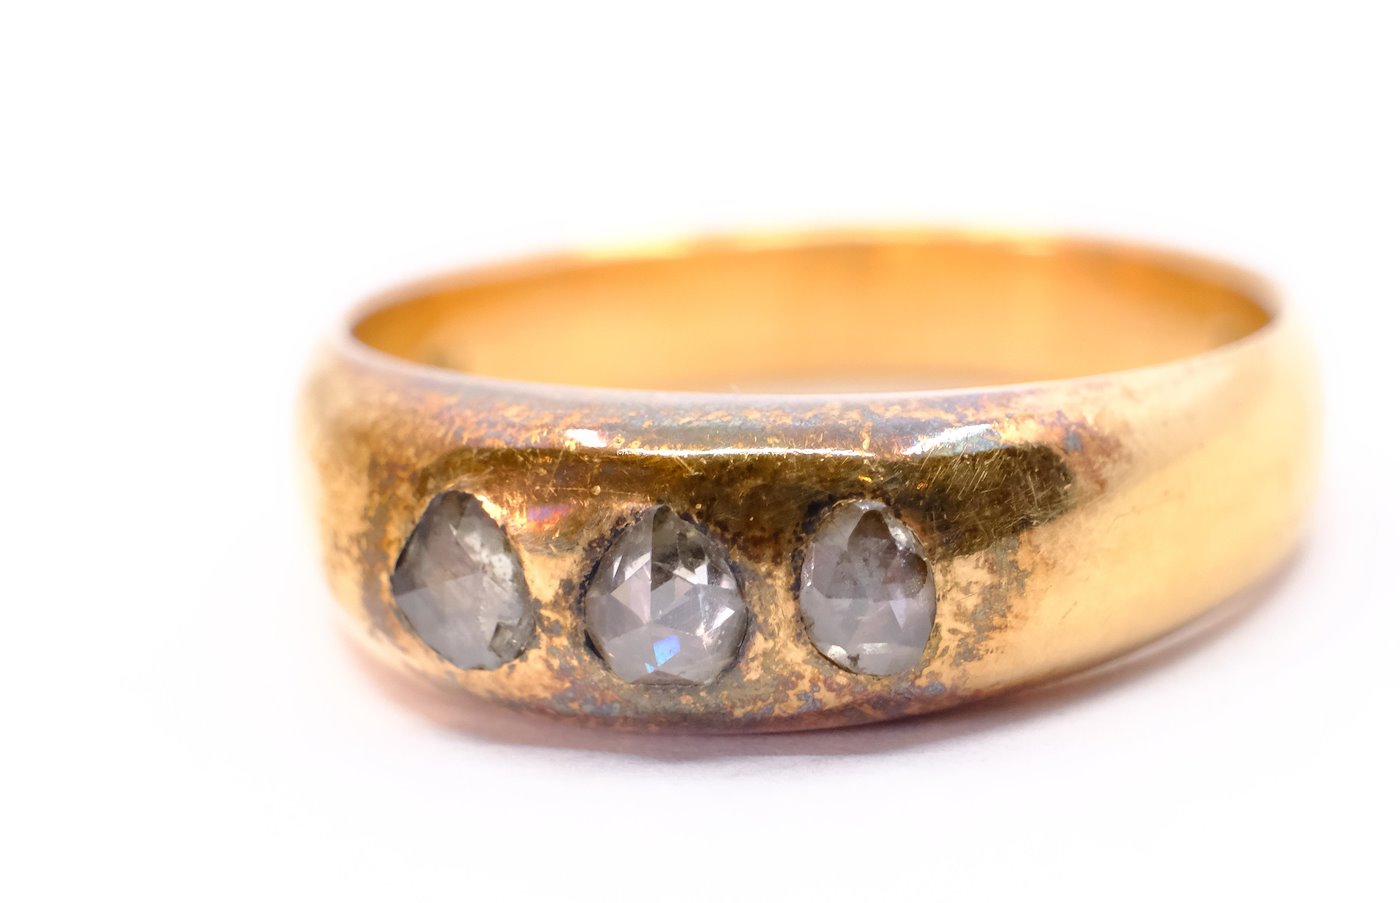 .. - Pánský prsten se 3 routy, zlato 580/1000, značeno platnou puncovní značkou Z-27, hrubá hmotnost 8,68 g